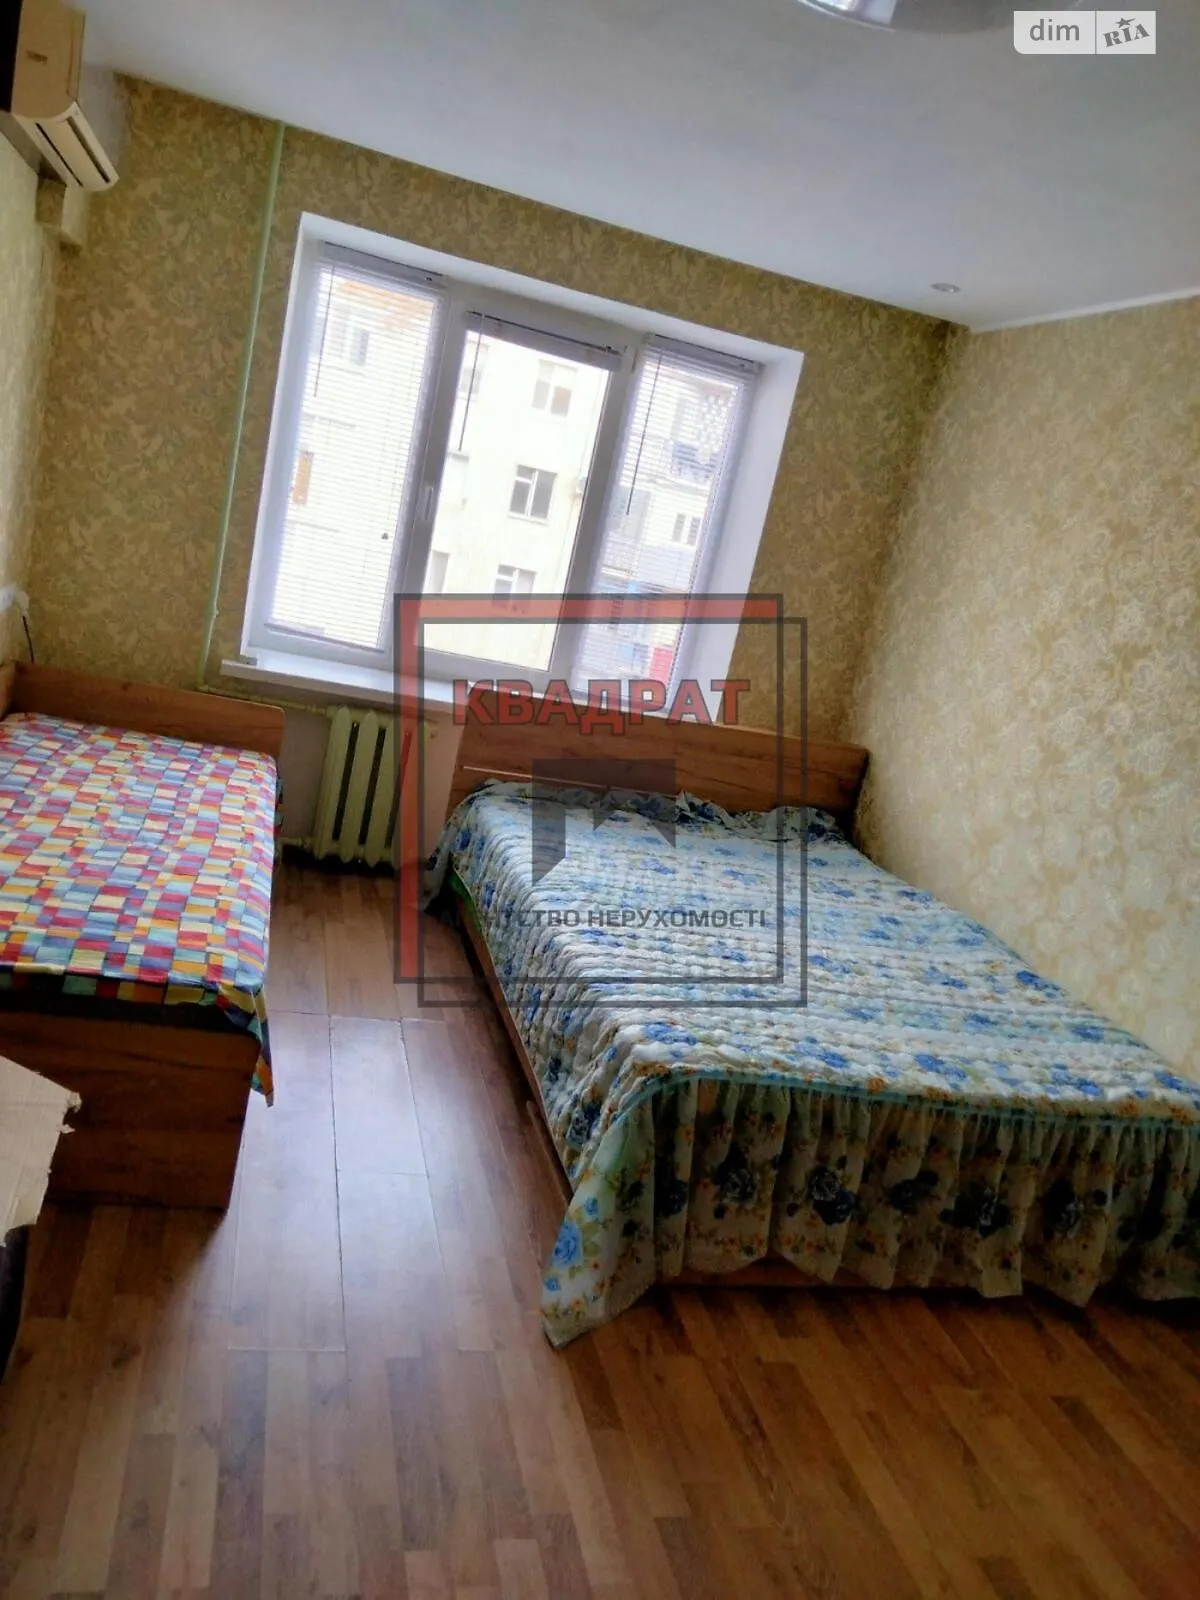 Здається в оренду кімната 18 кв. м у Полтаві, цена: 5000 грн